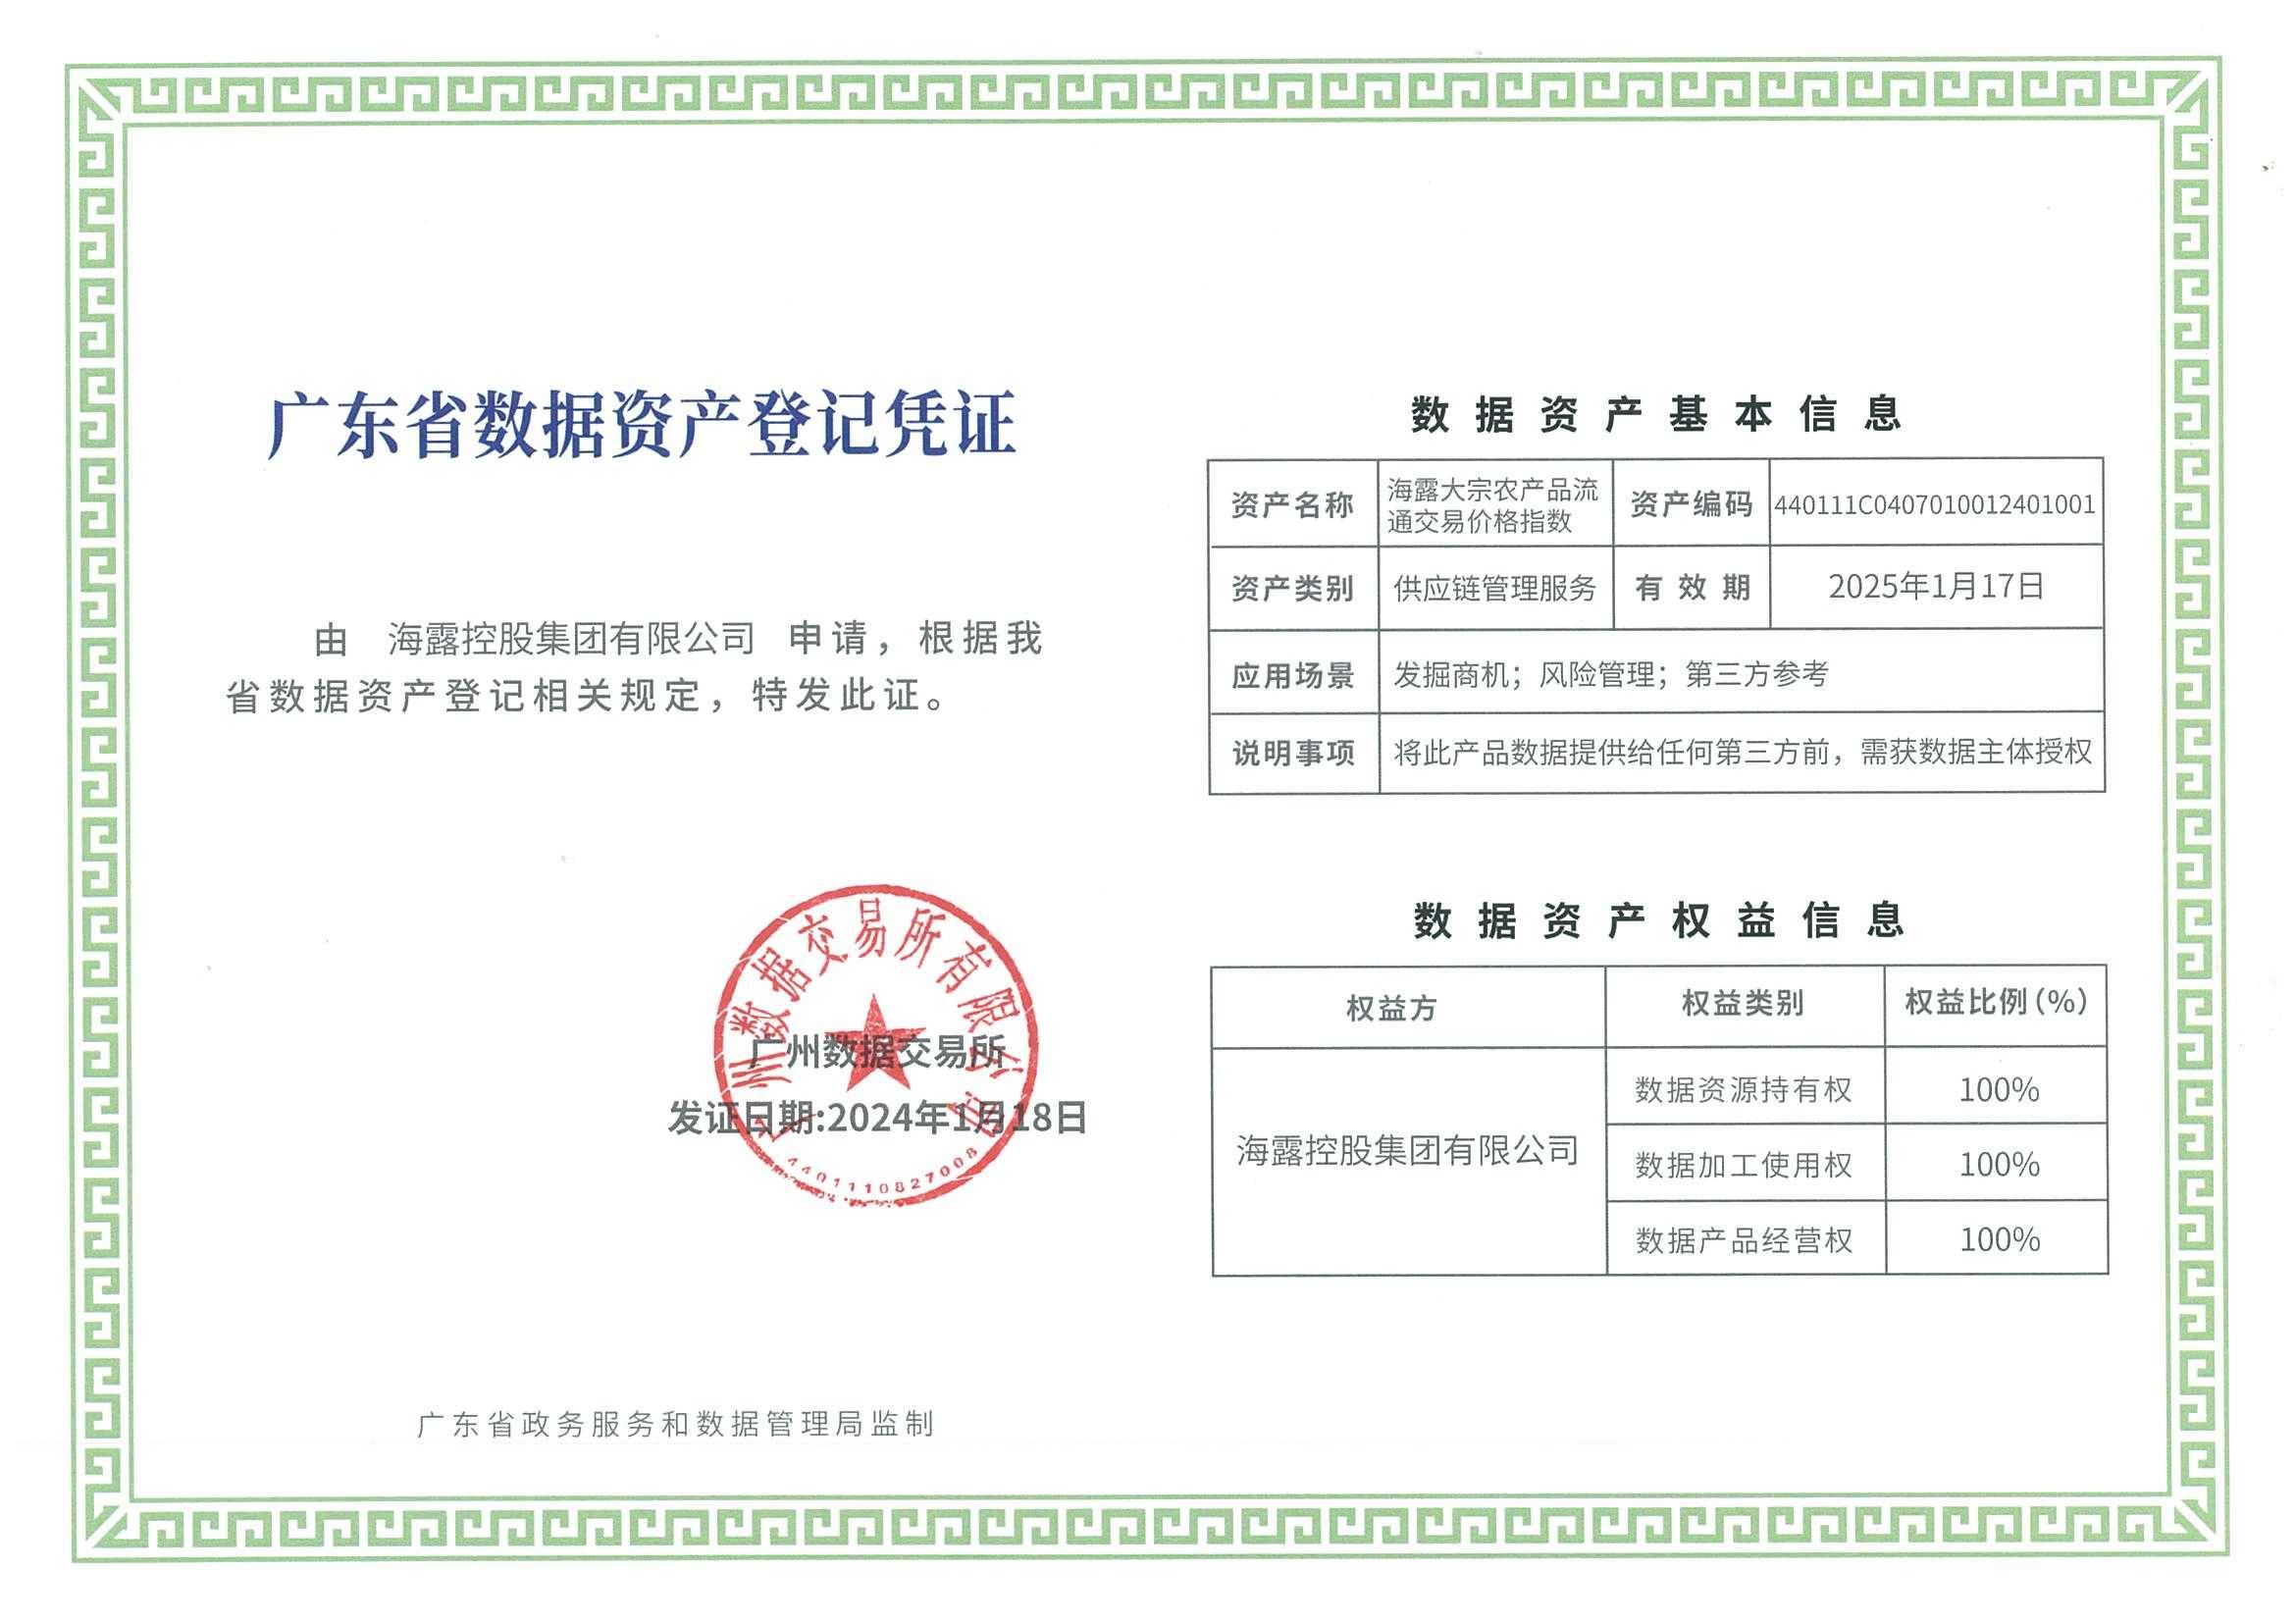 海露集团农产品交易系统获“广东省数据资产登记凭证”